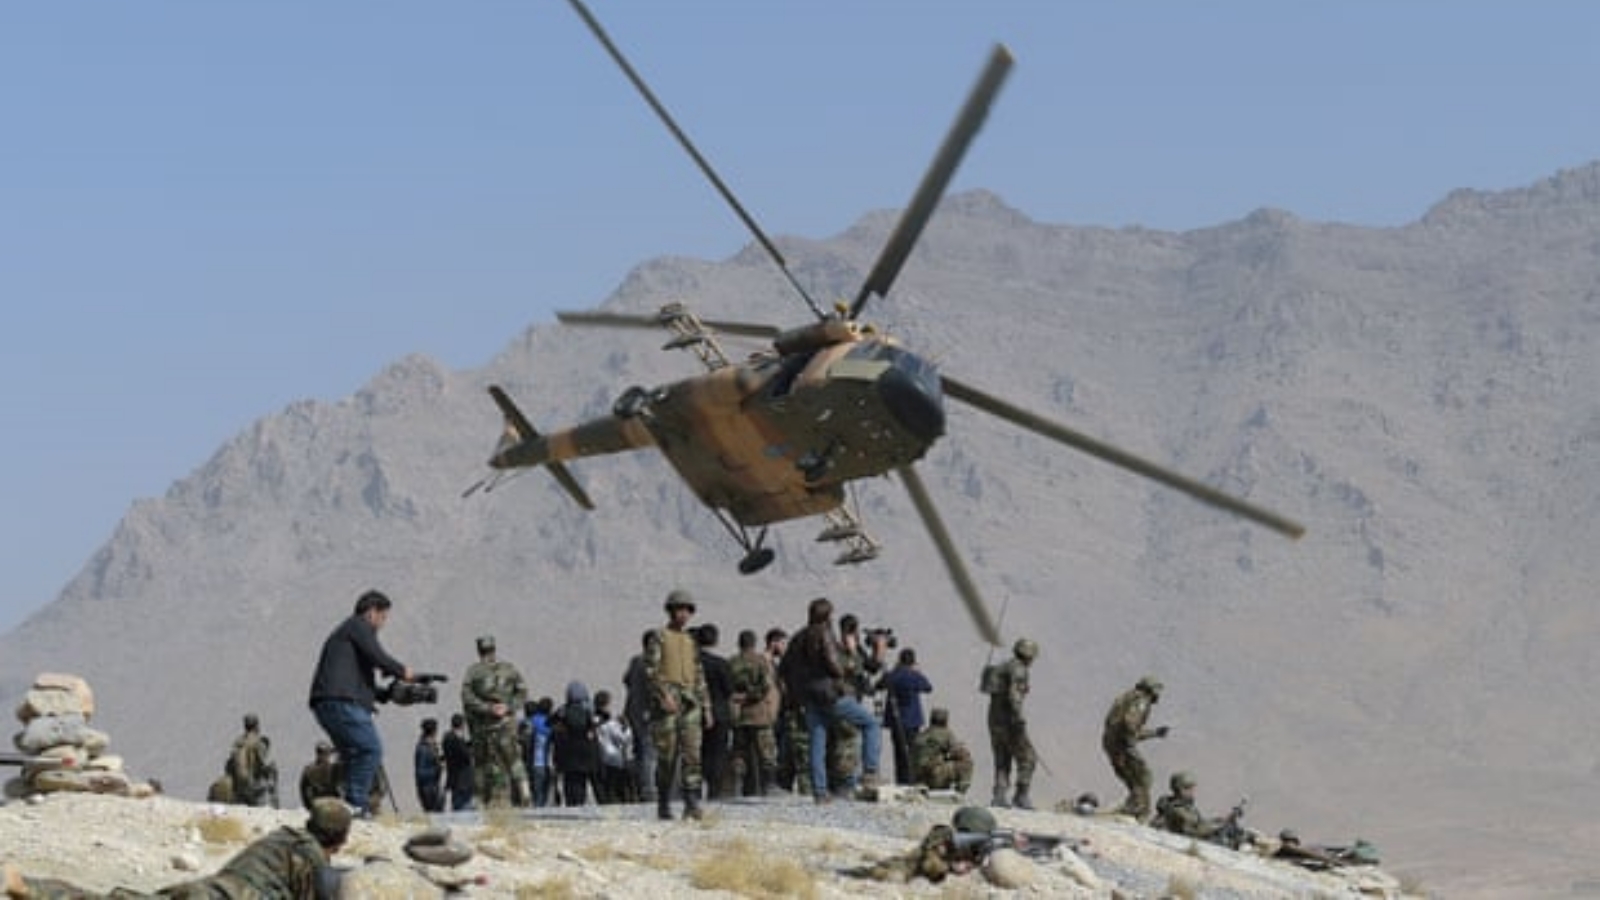 طائرة هليكوبتر تابعة للقوات الجوية الأفغانية من طراز أم أي17 تحلق بالقرب من الكوماندوز خلال مناورة عسكرية في ضواحي كابول في تشرين الأول/ أكتوبر 2017.